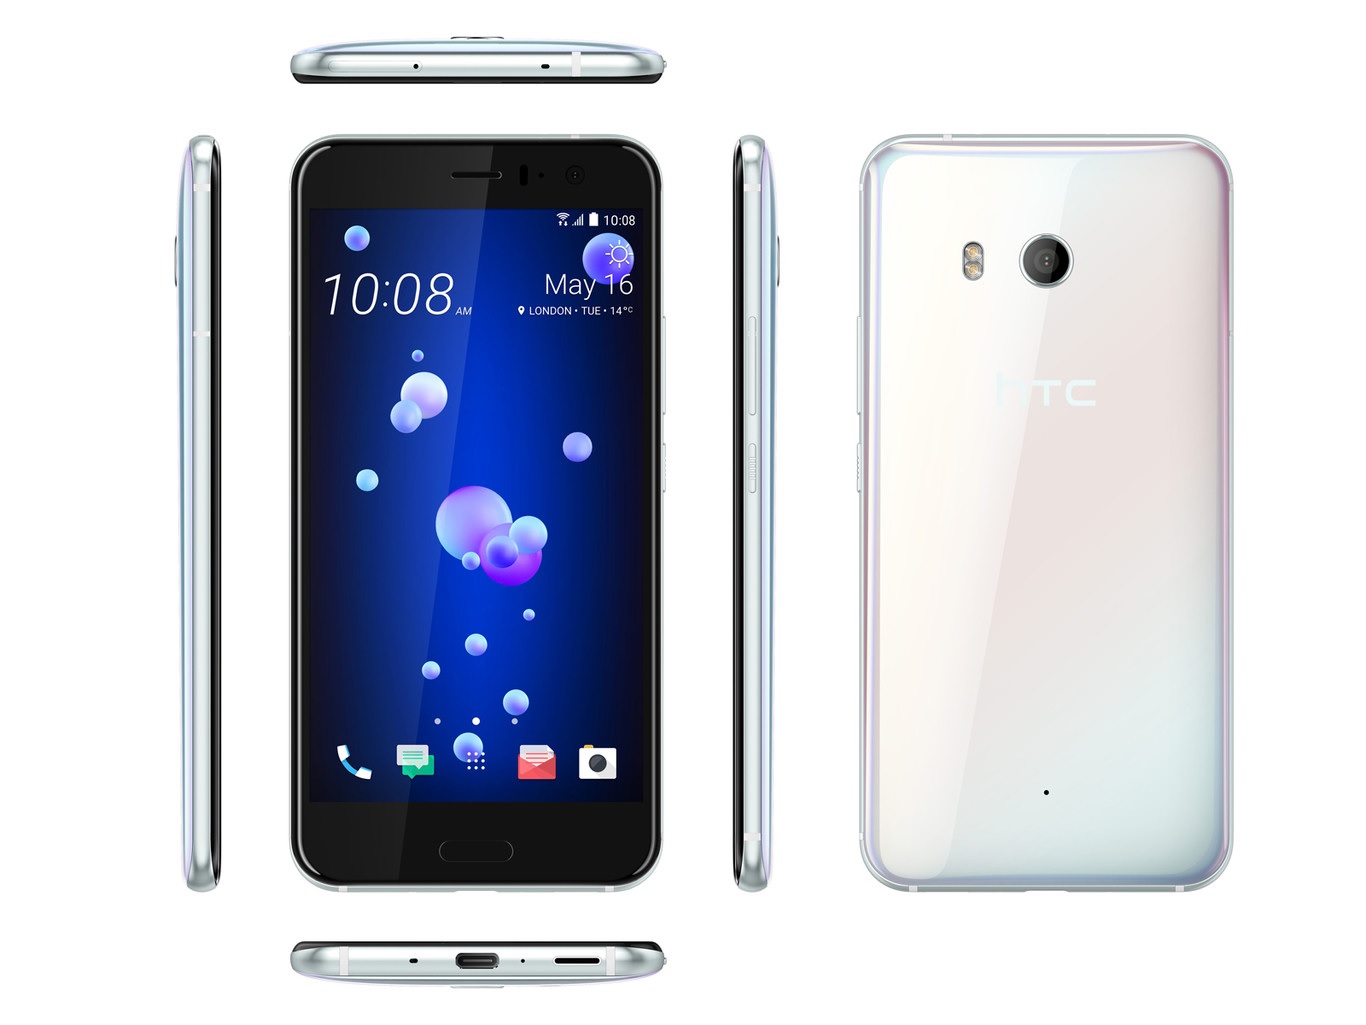 El teléfono HTC U11 incluye Alexa, el asistente de Amazon